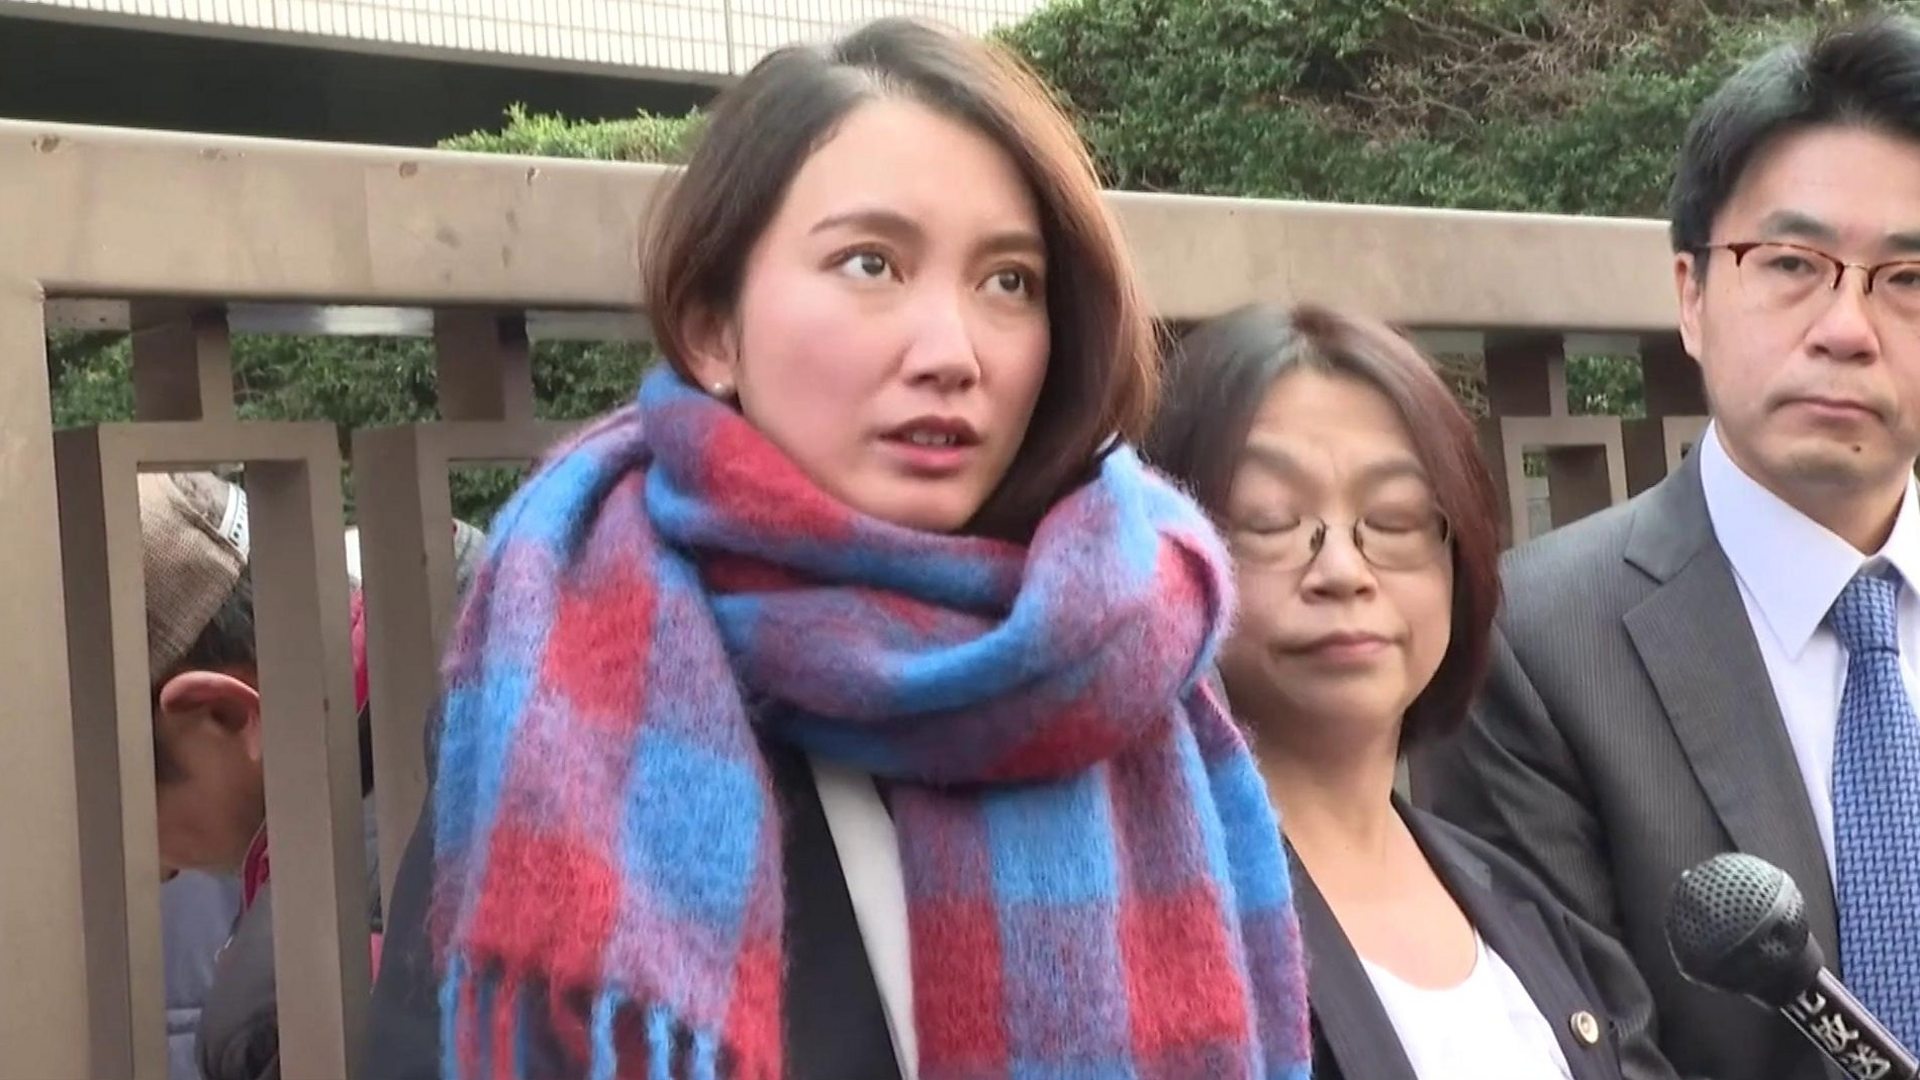 1920px x 1080px - Journalist wins Japan civil rape case - BBC News